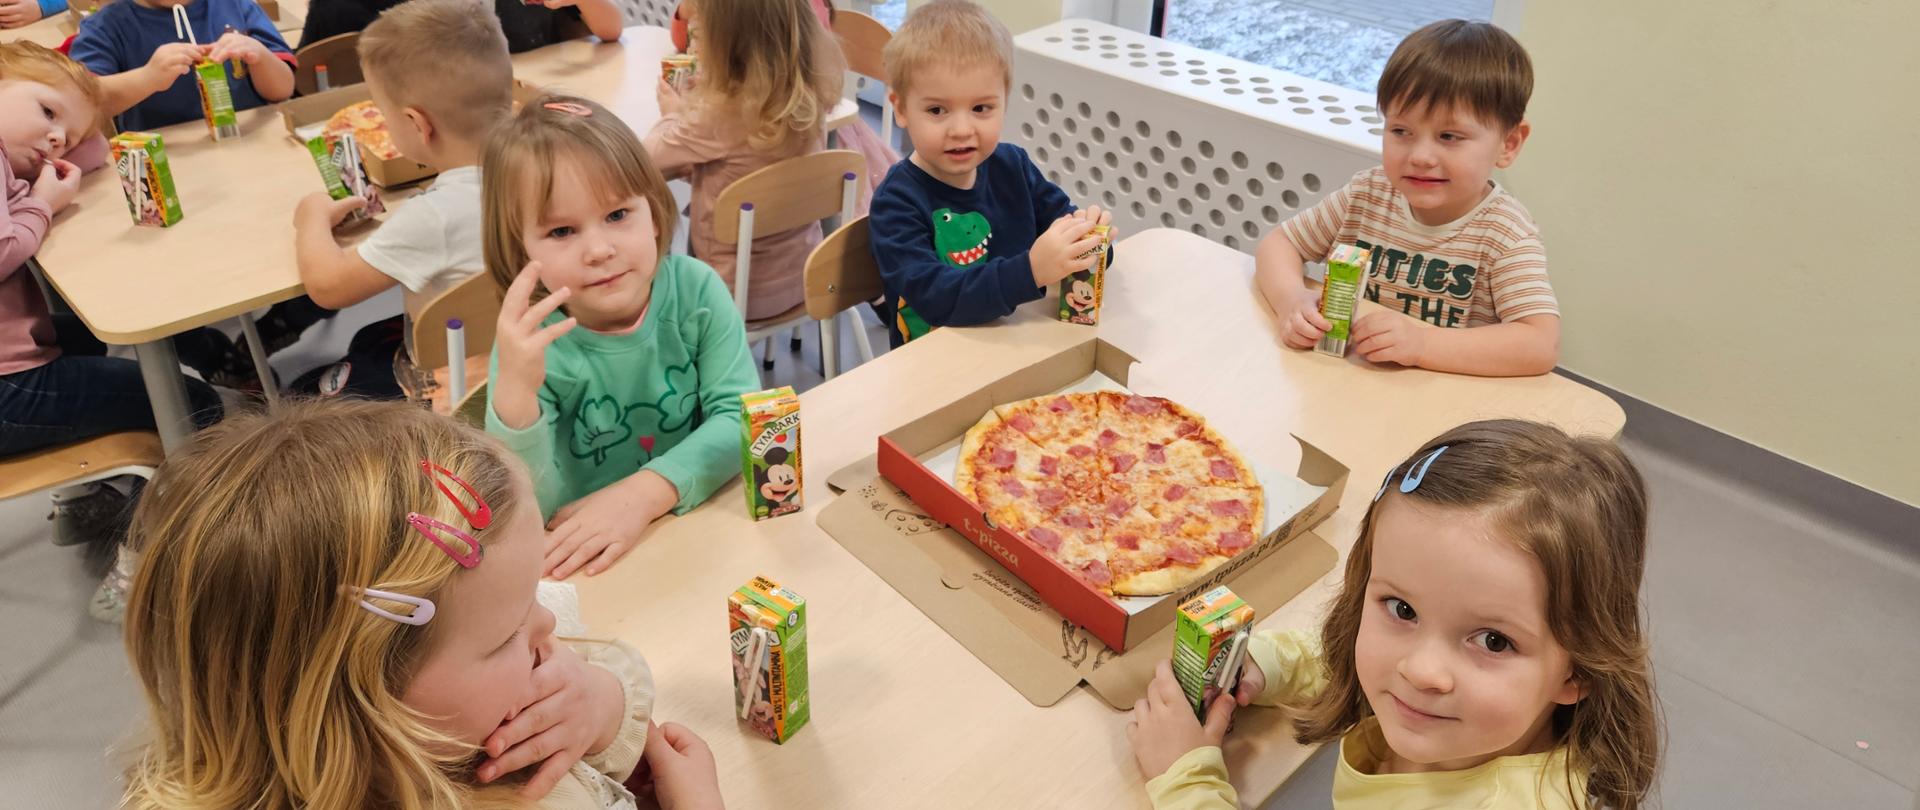 Międzynarodowy Dzień Pizzy w przedszkolu